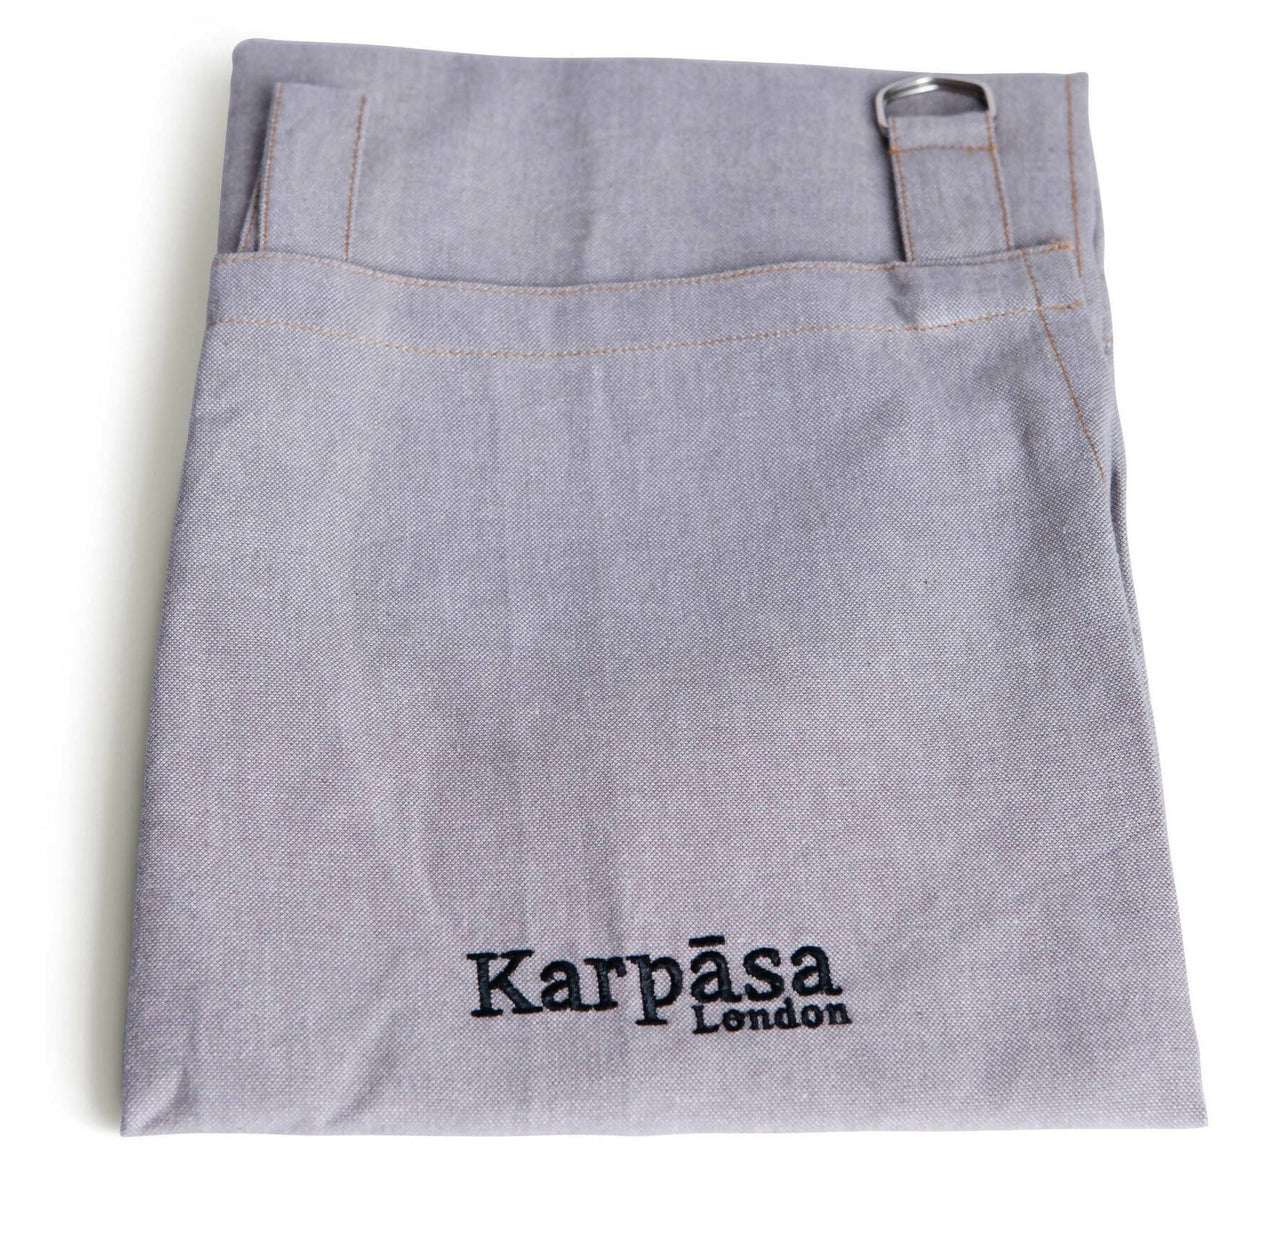 Karpasa London Organic Cotton Apron - Distacart